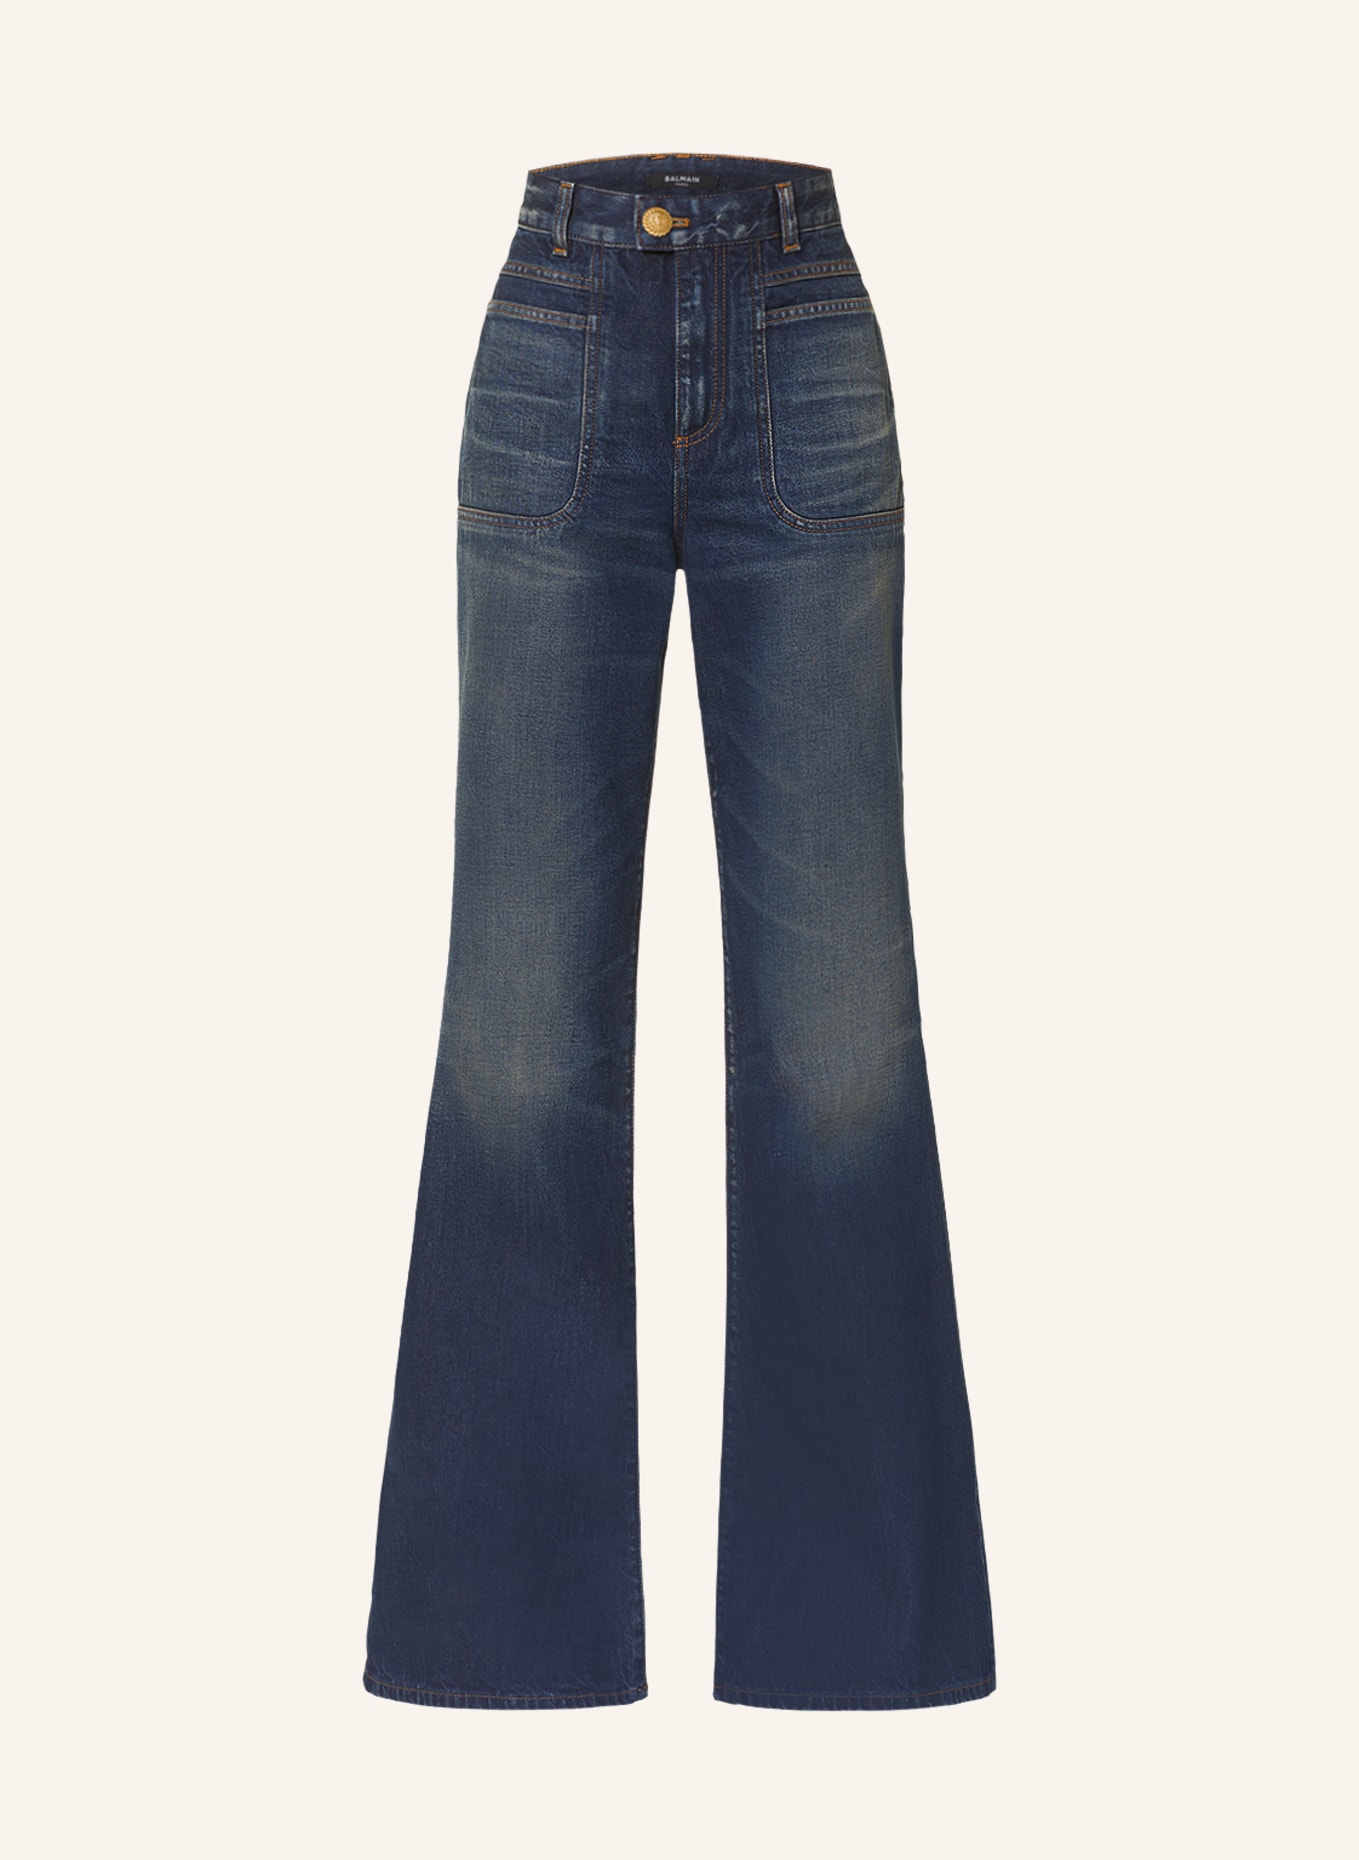 BALMAIN Flared Jeans, Farbe: 6KD 6KD BLEU JEAN BRUT (Bild 1)